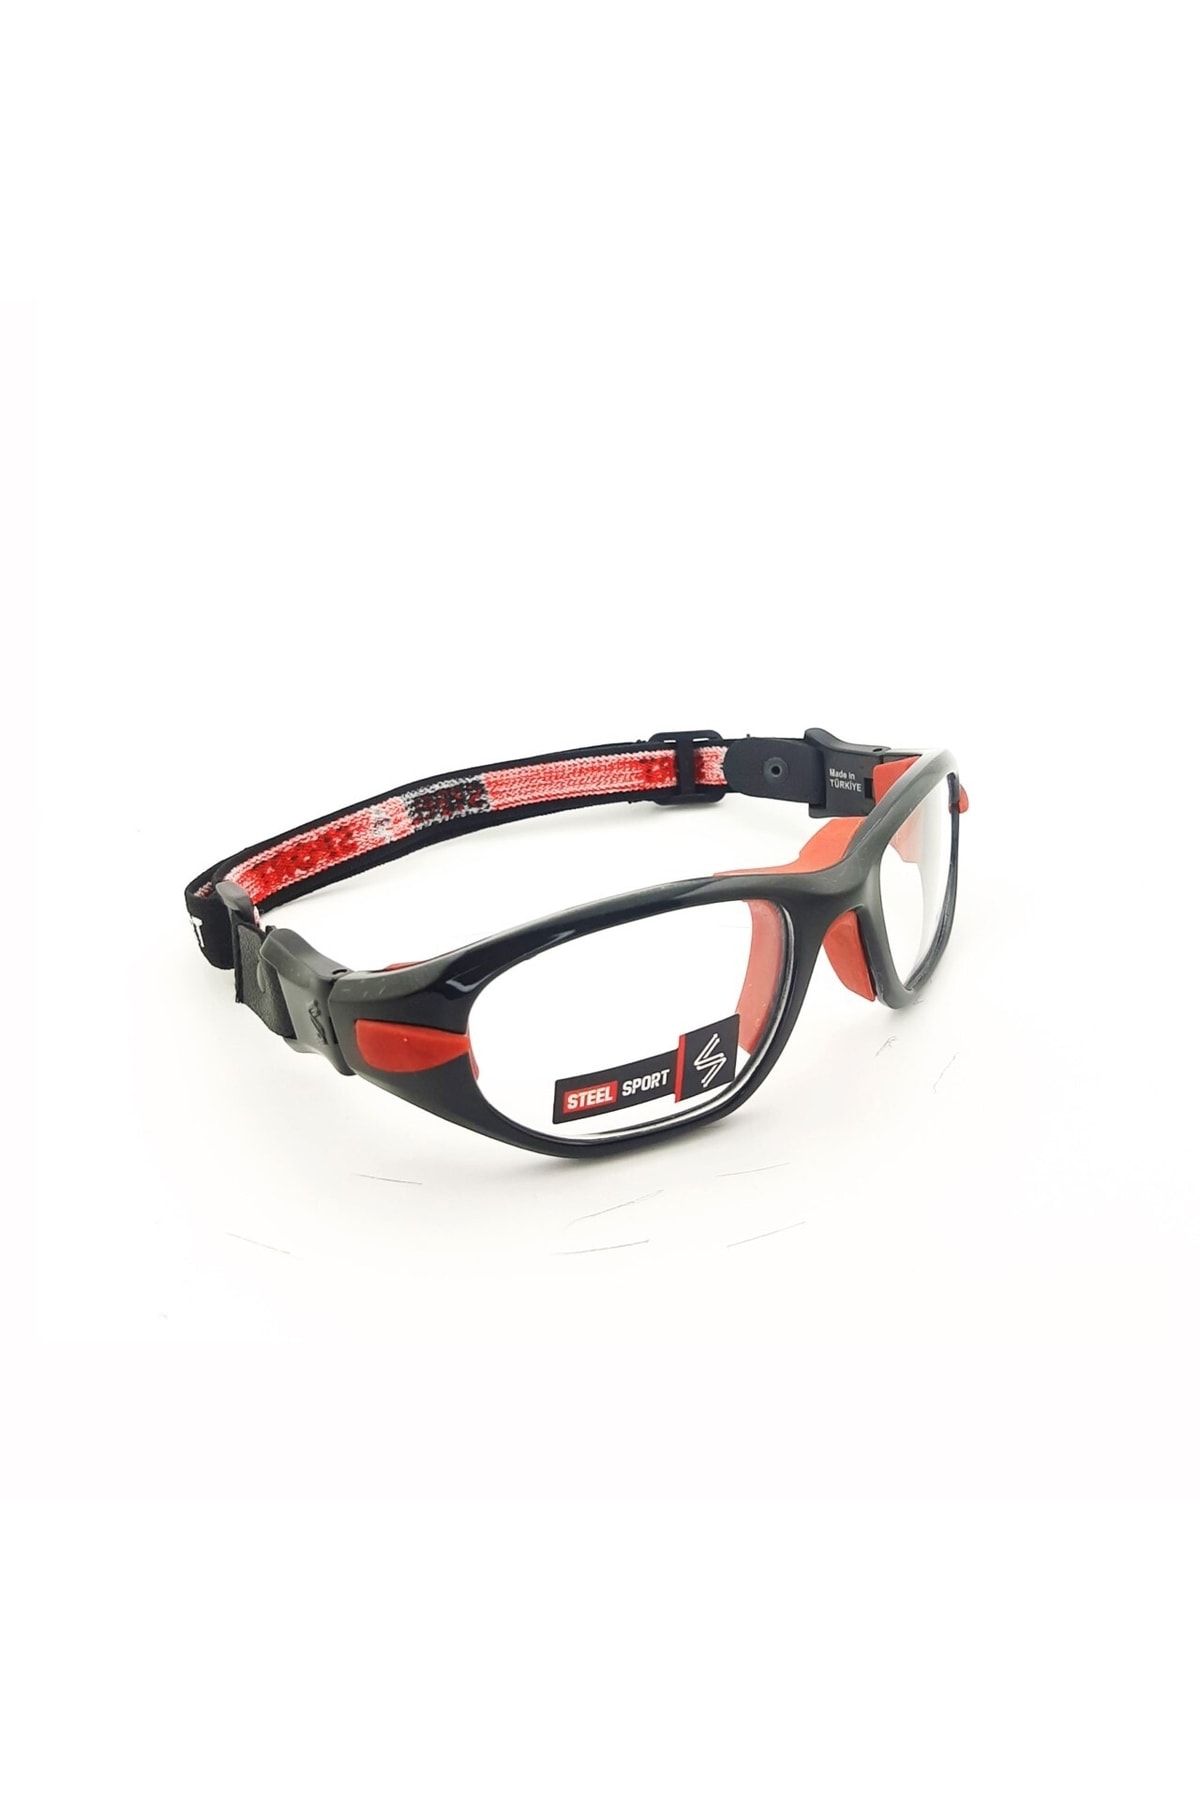 Steel Sport Maxima Parlak Metalik Siyah - Kırmızı Pedler [20+ Yaş ] Numaralı Olabilen Sporcu Gözlüğü